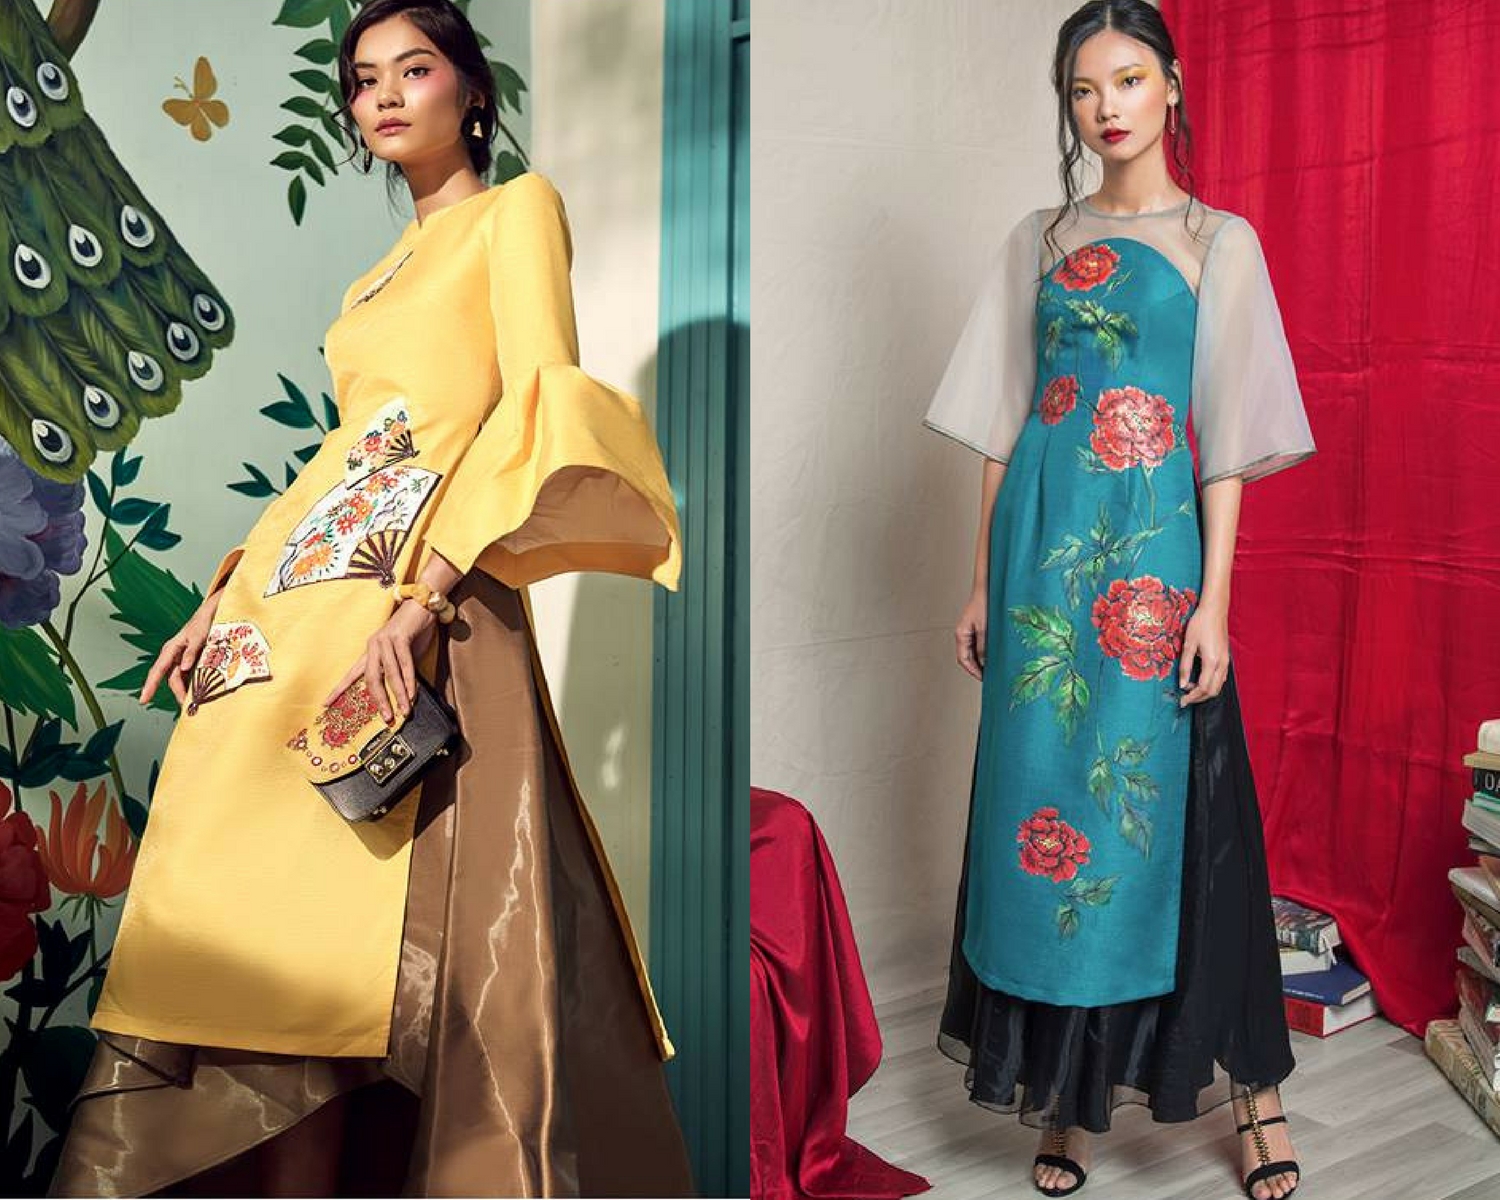 Dàn sao Việt hưởng ứng xu hướng áo dài theo từng dịp Tết truyền thống ra sao?